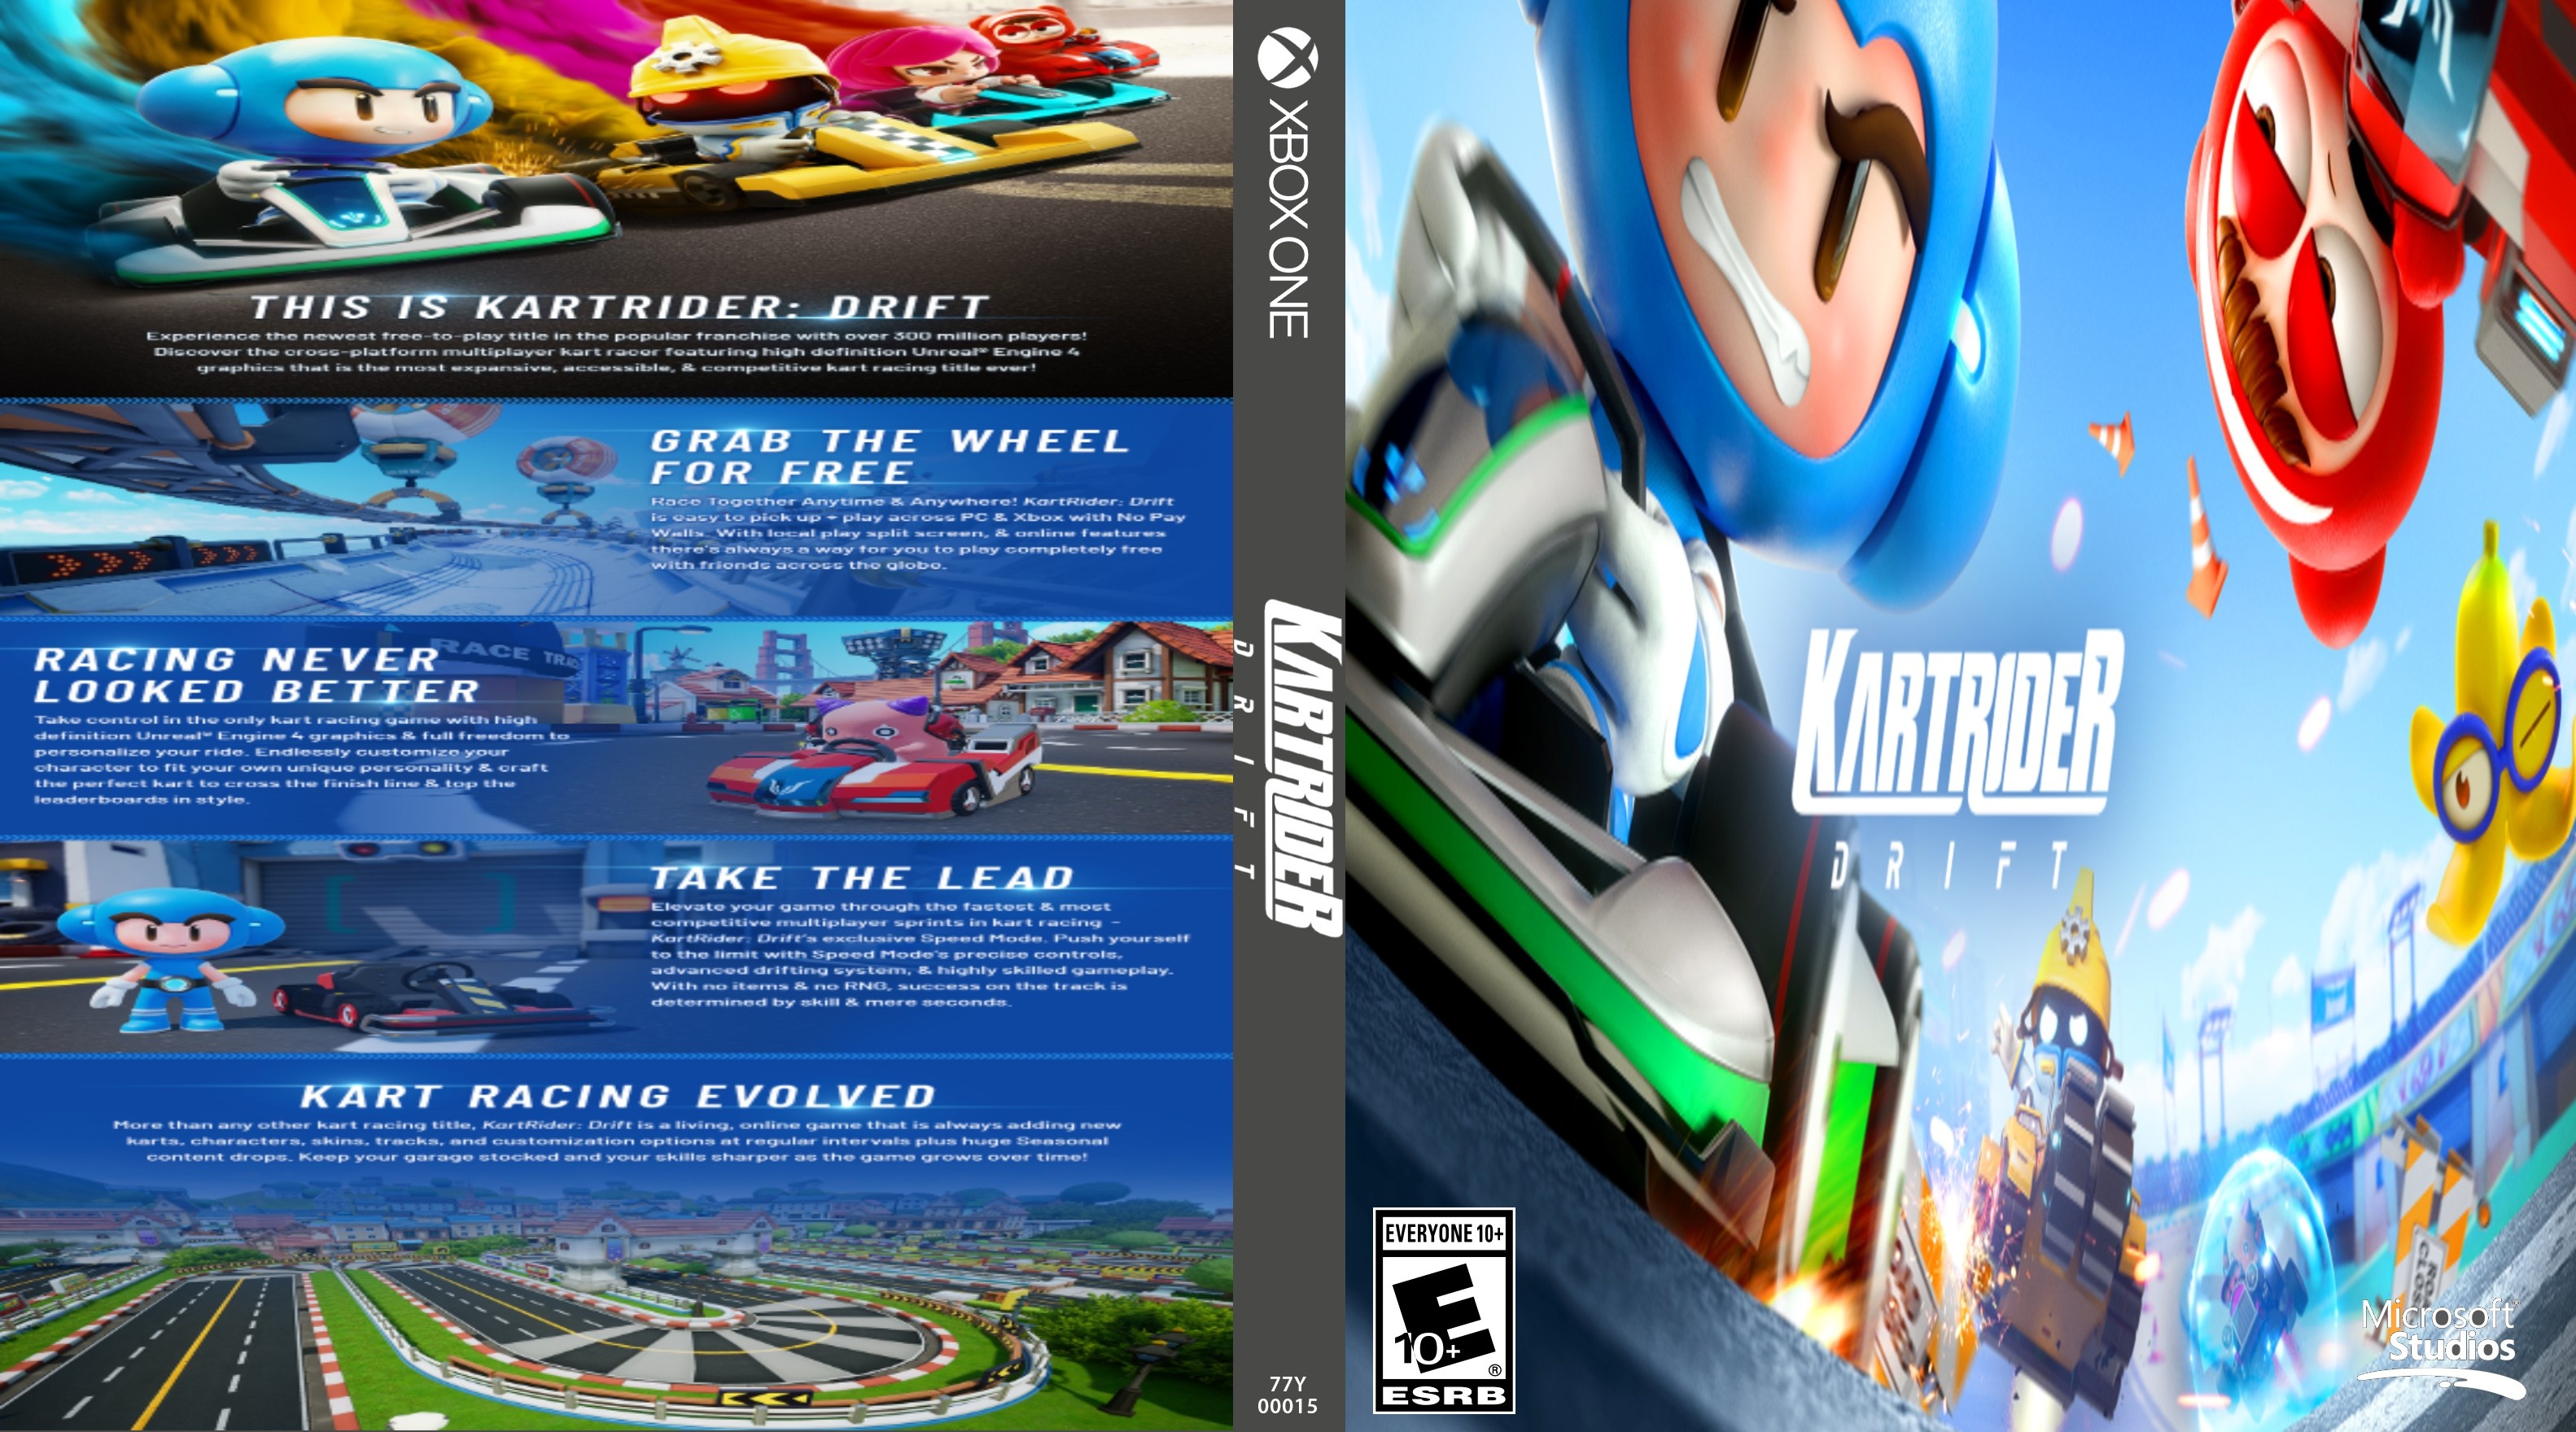 KartRider:Drift box cover